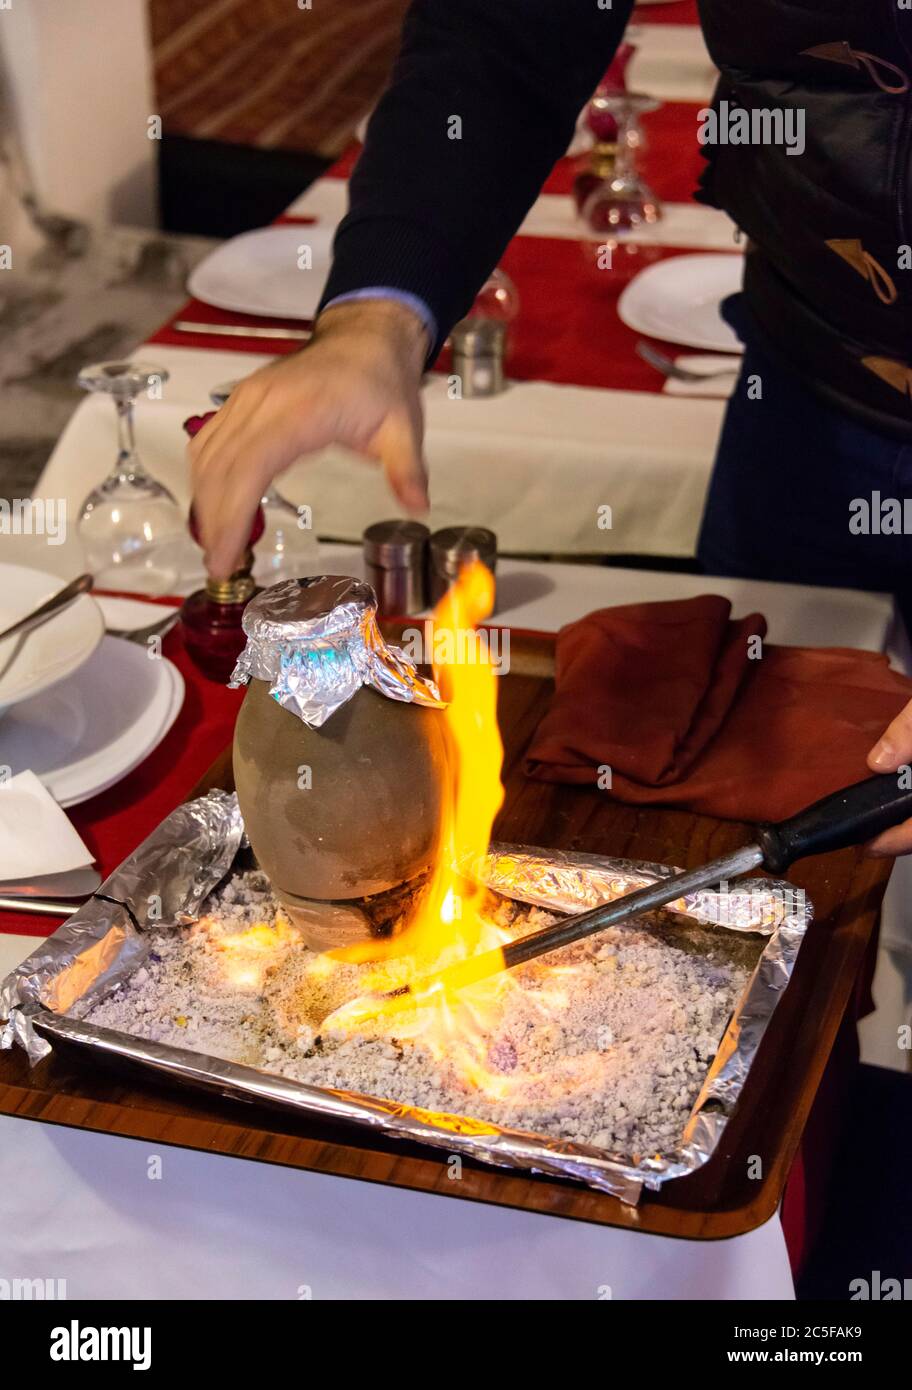 Le Teti Kebab est servi avec feu dans un restaurant, le Kebab braisé dans une casserole en faïence, plat turc typique de Cappadoce, Istanbul, Turquie Banque D'Images